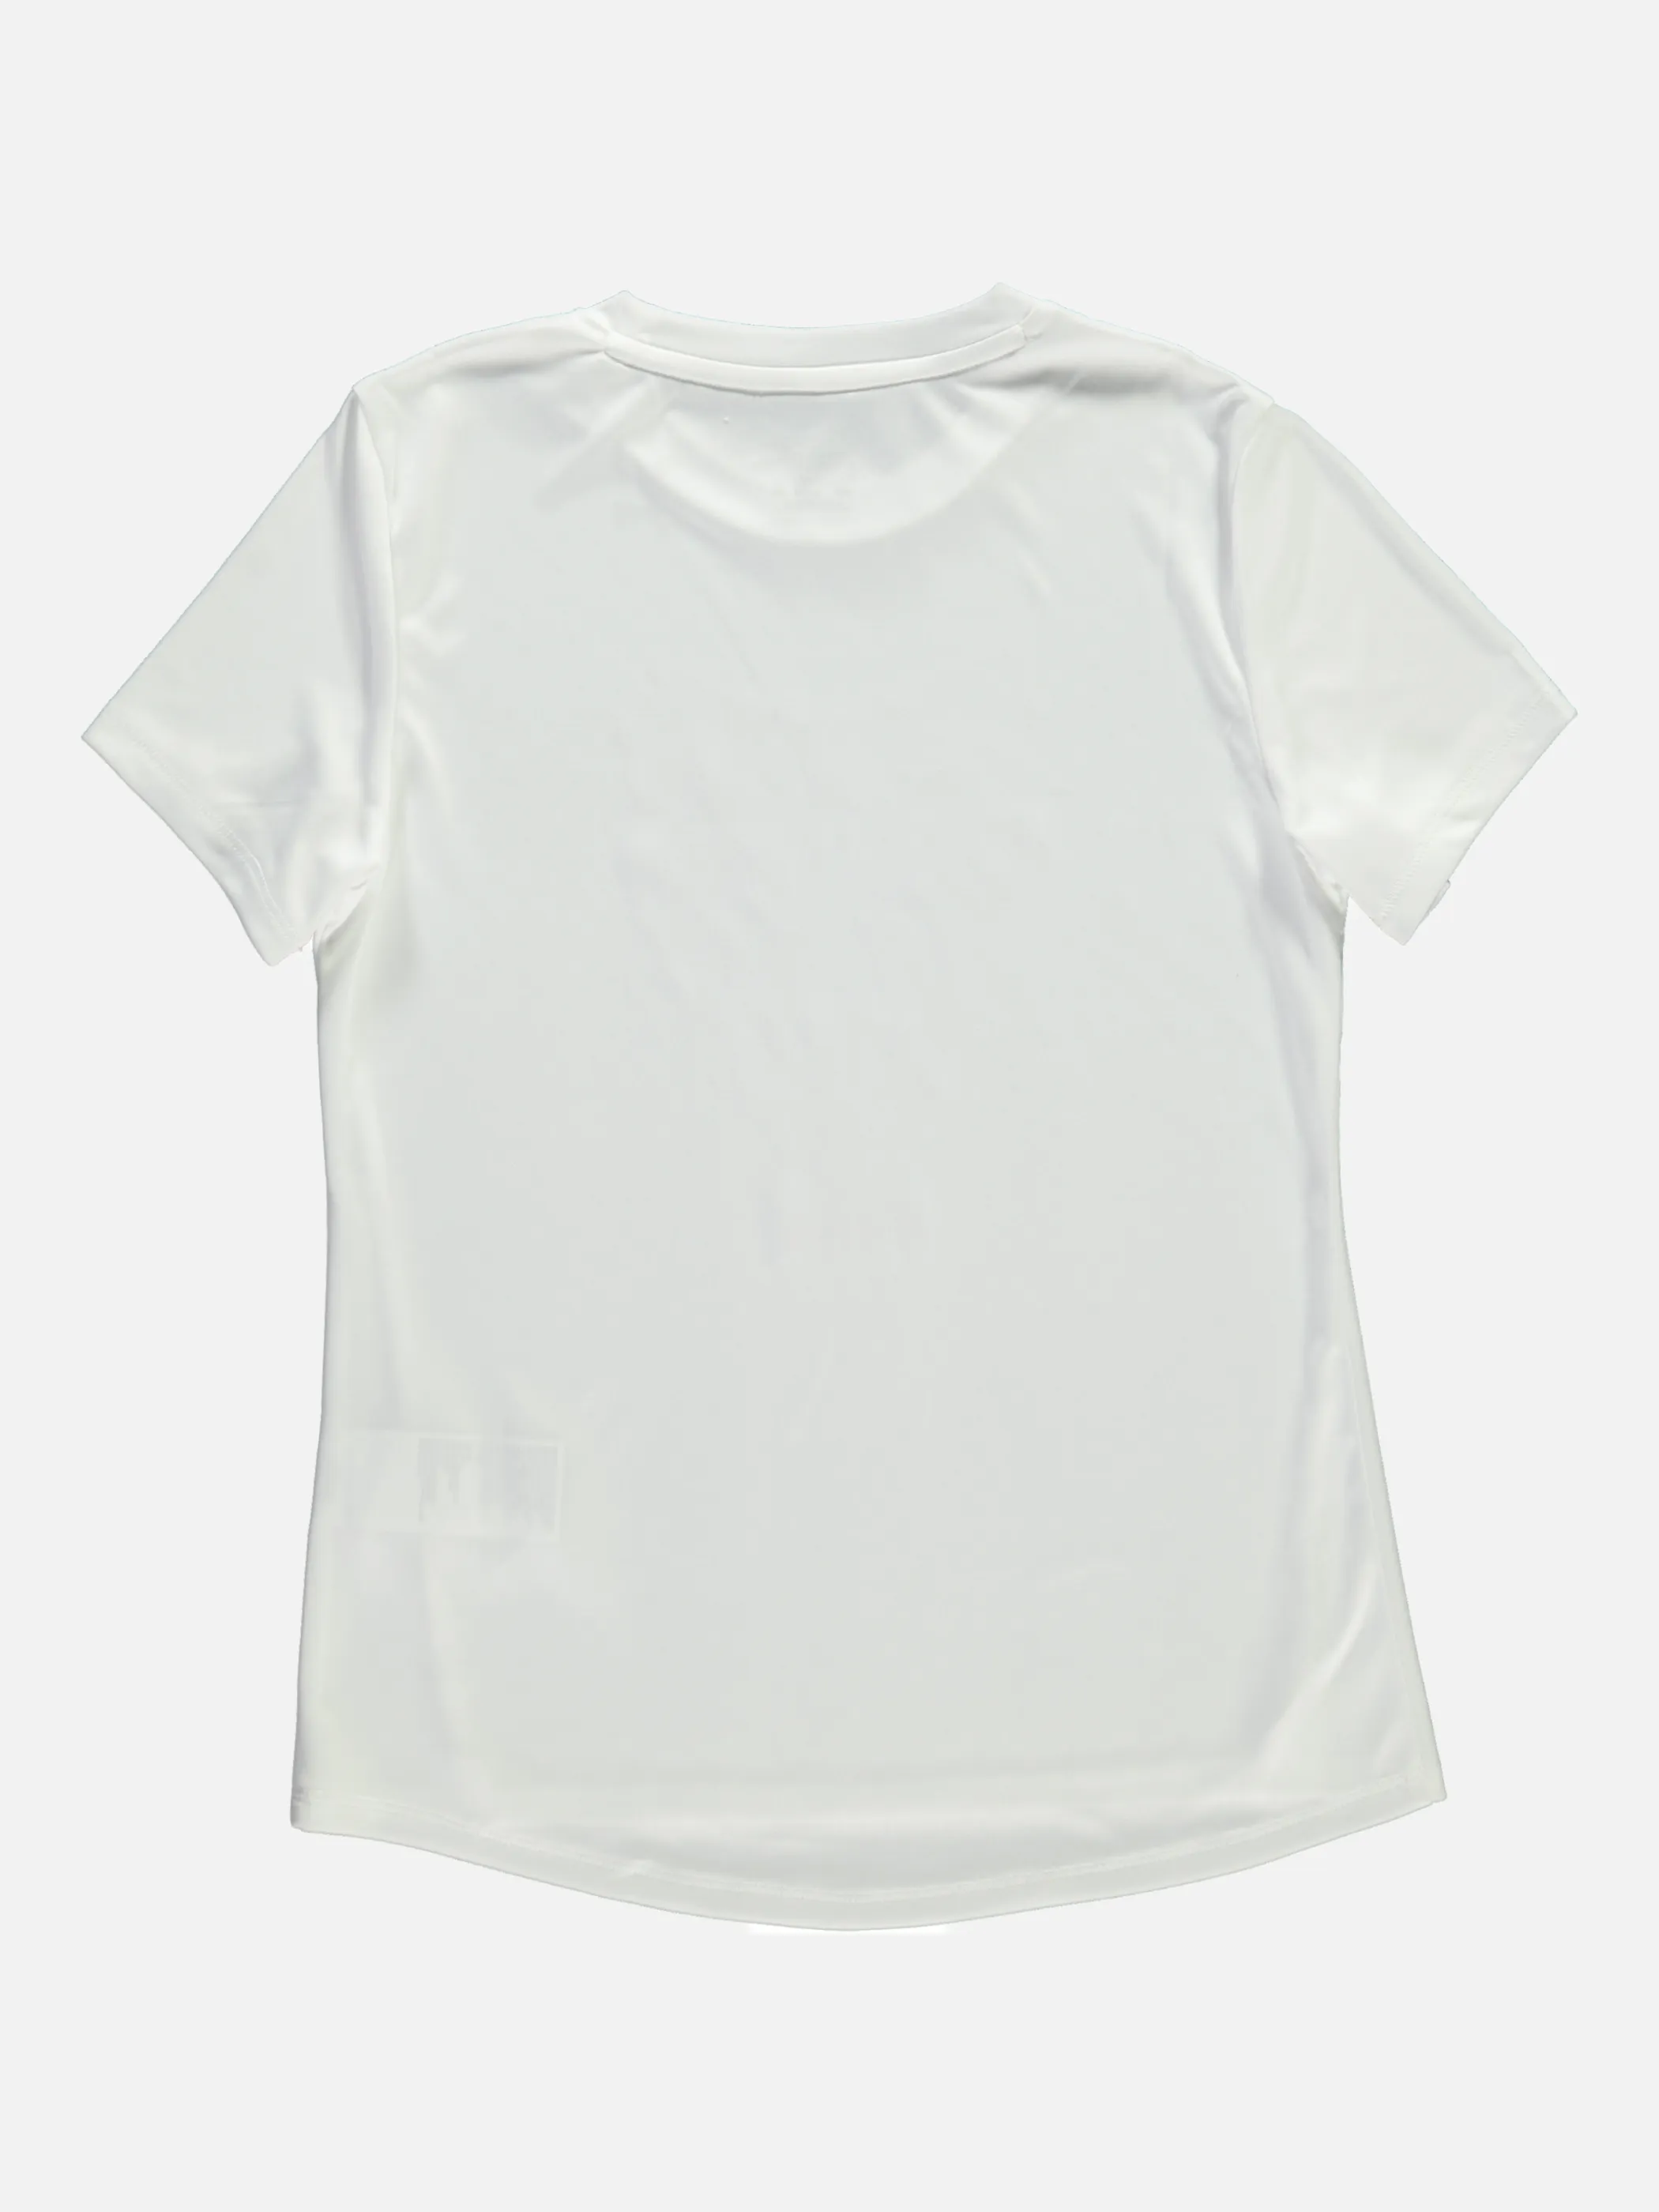 Puma 583331 Md-Logo-Shirt Weiß 839185 02 2